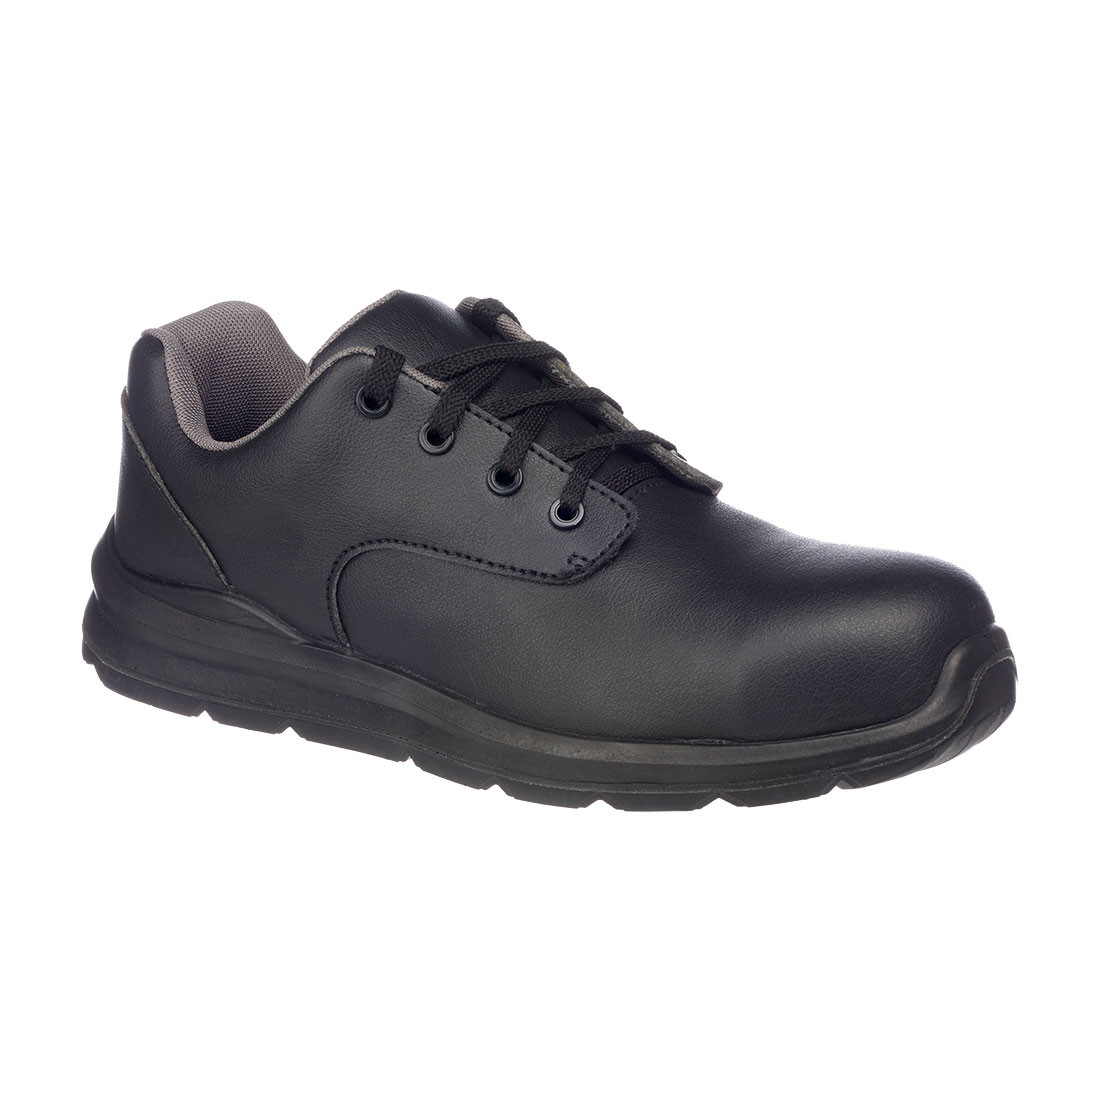 PantofI de protectie cu siret Portwest Compositelite - Incaltaminte de protectie | Bocanci, Pantofi, Sandale, Cizme